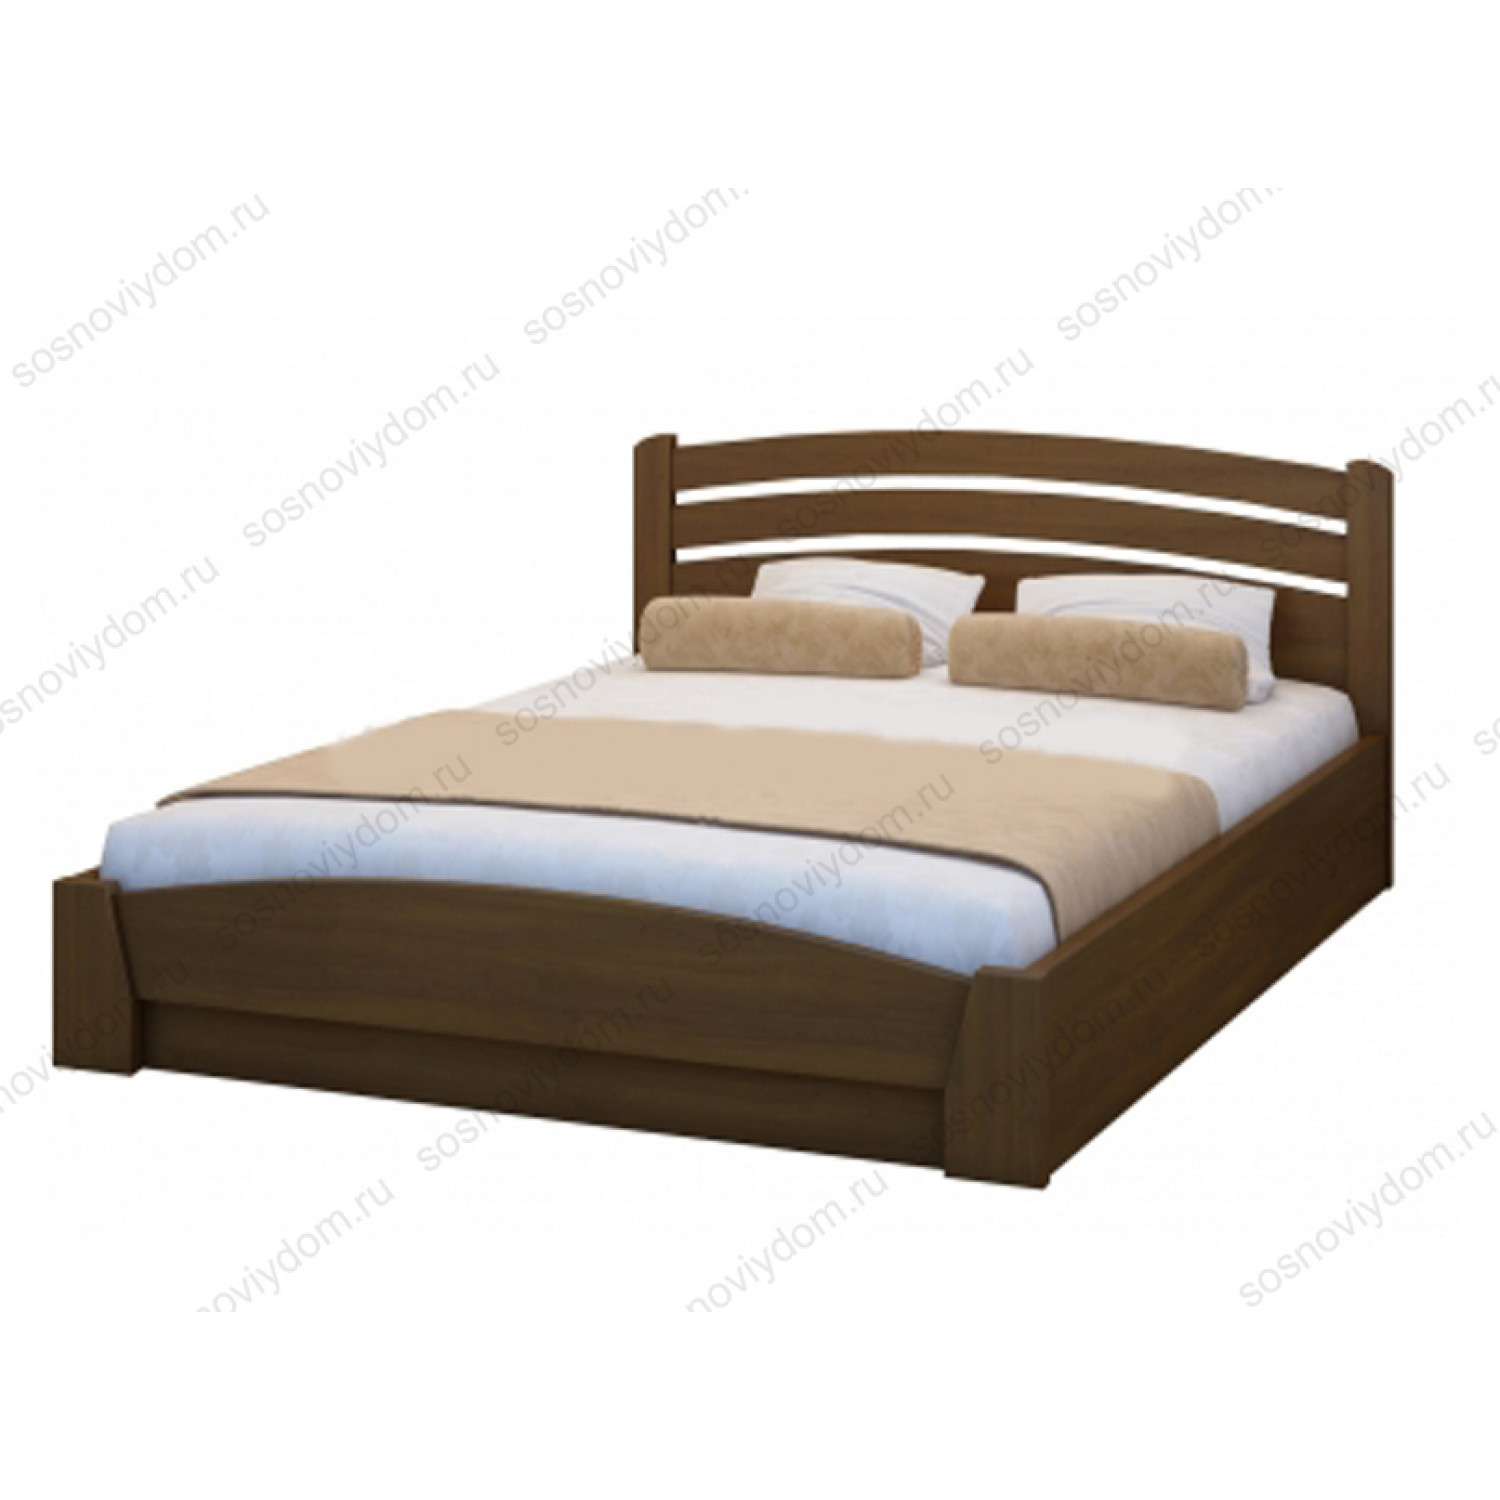 Кровать 160х200 купить спб недорого от производителя. Кровать из сосны 180х200 добрый мастер.